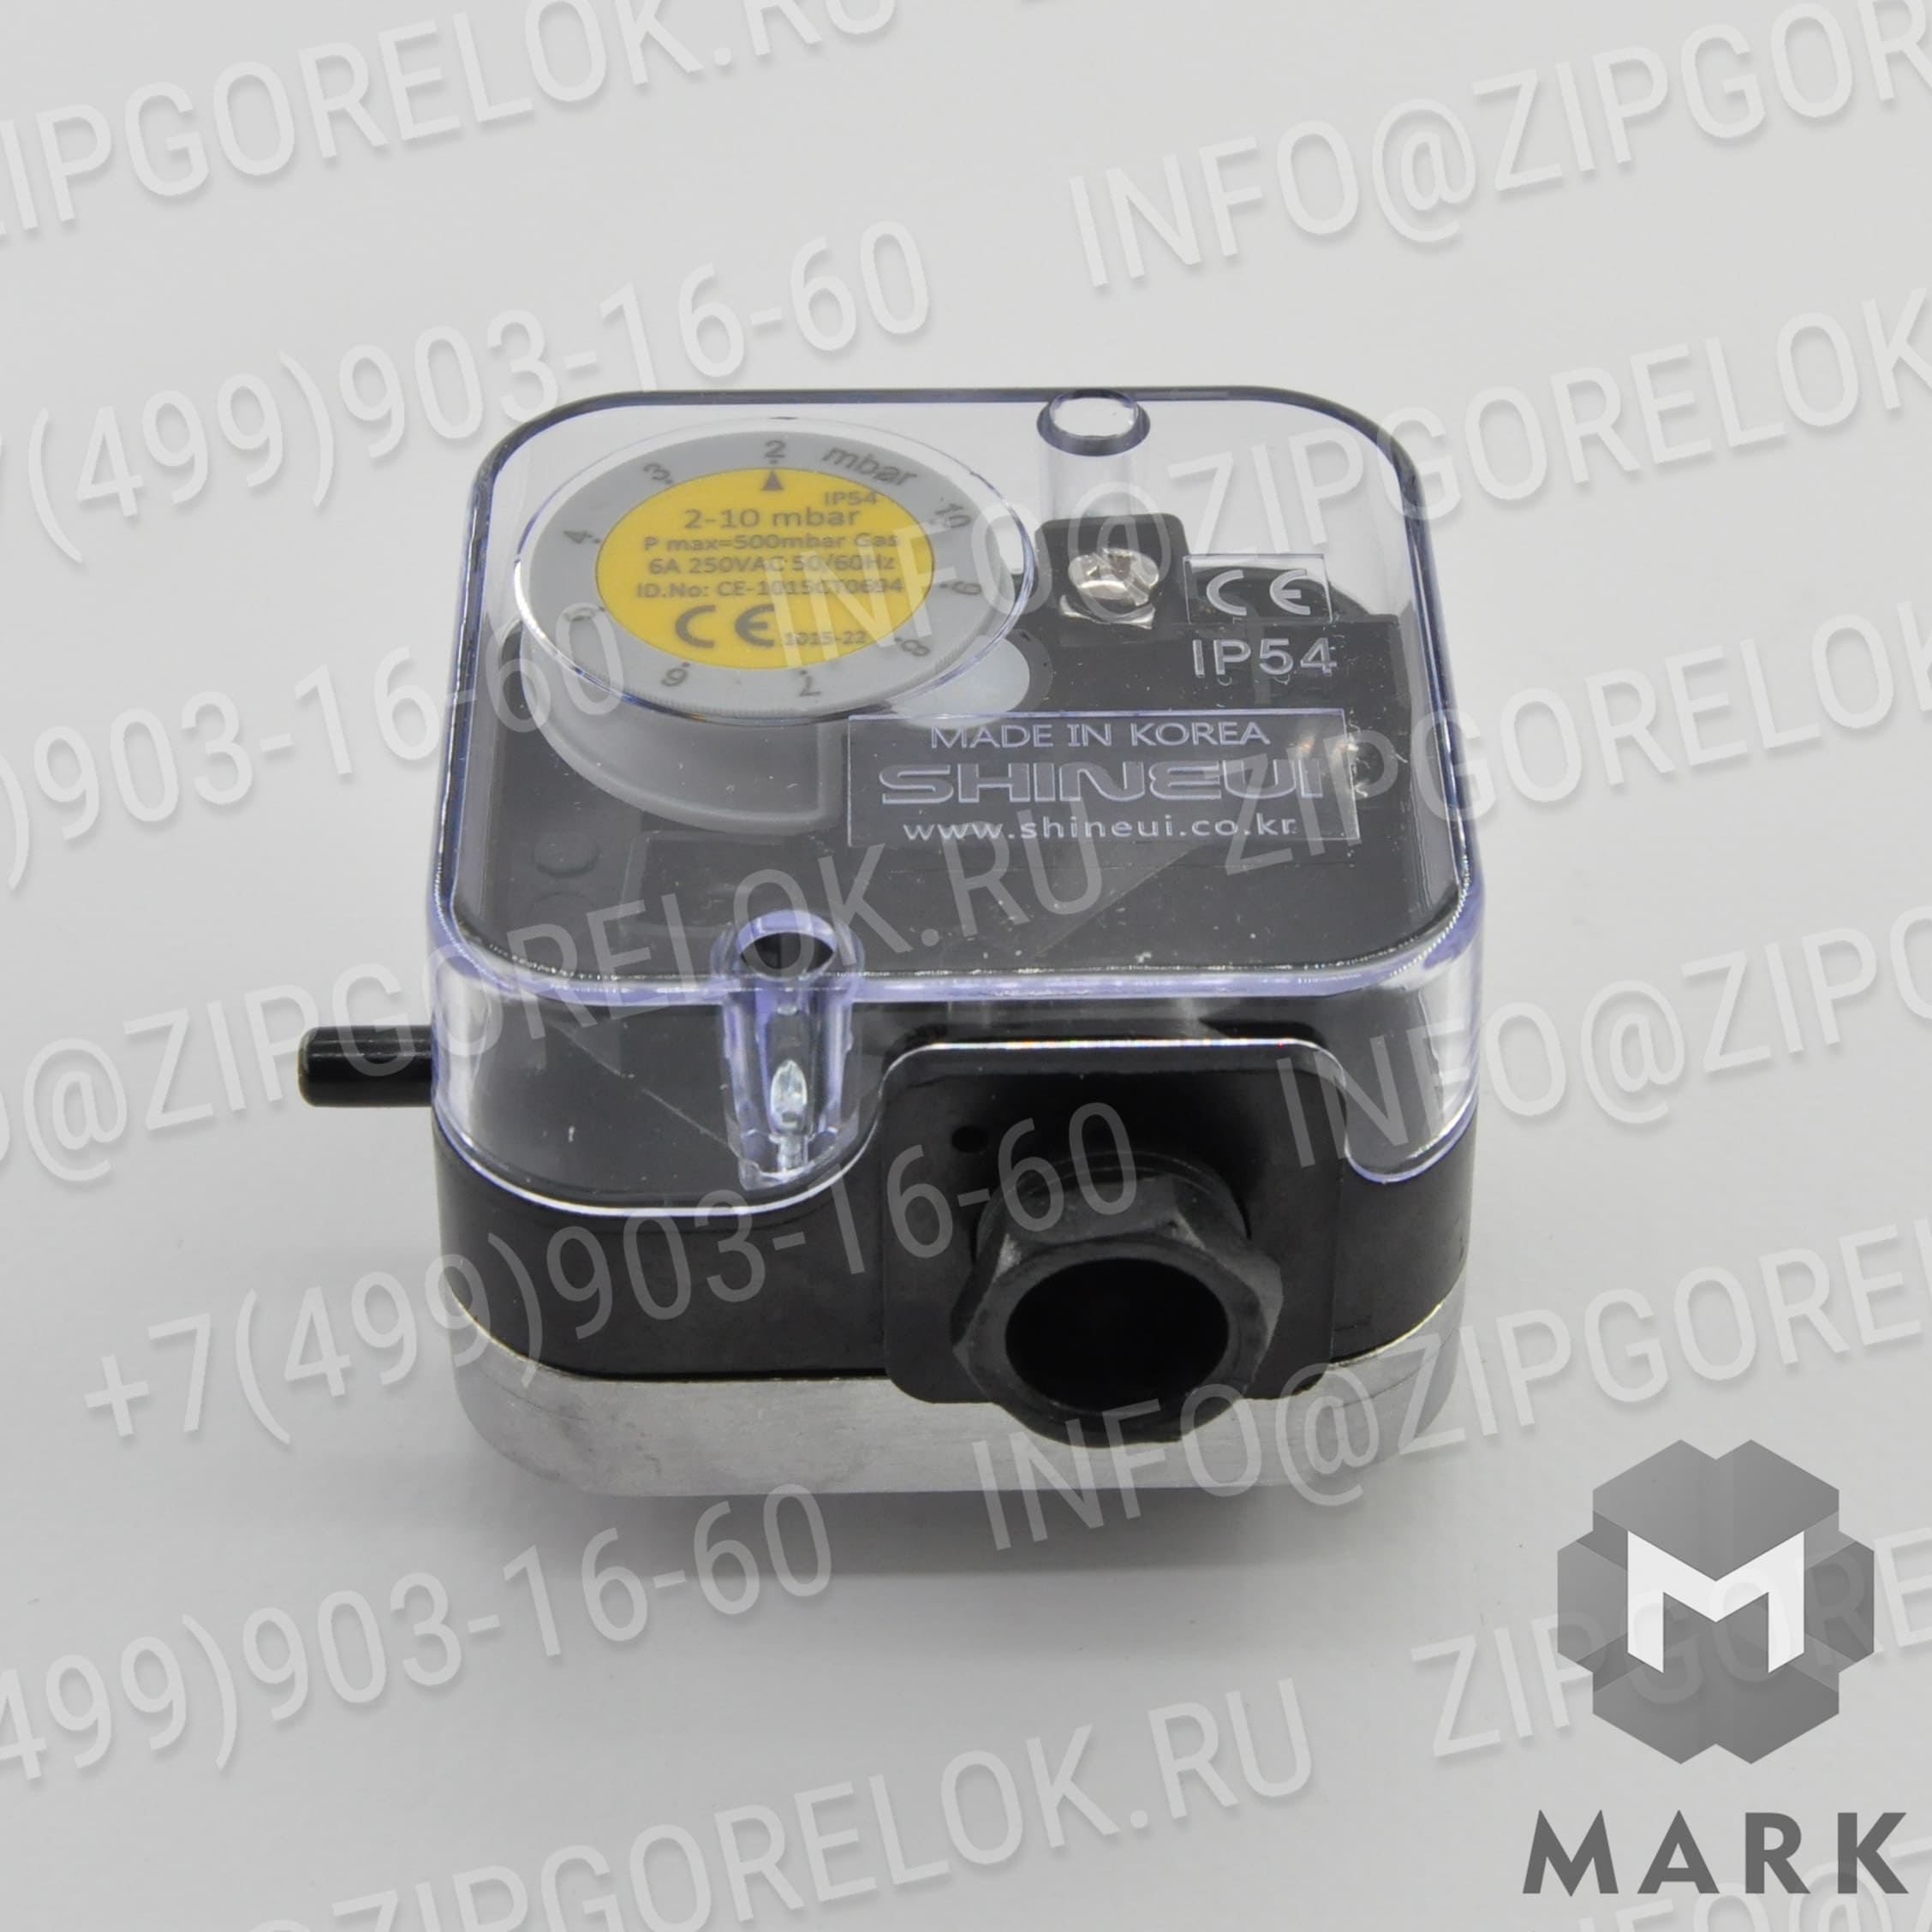 SGPS-10V Купить 3008981 Пламенная труба Riello / Риелло | Zipgorelok.ru